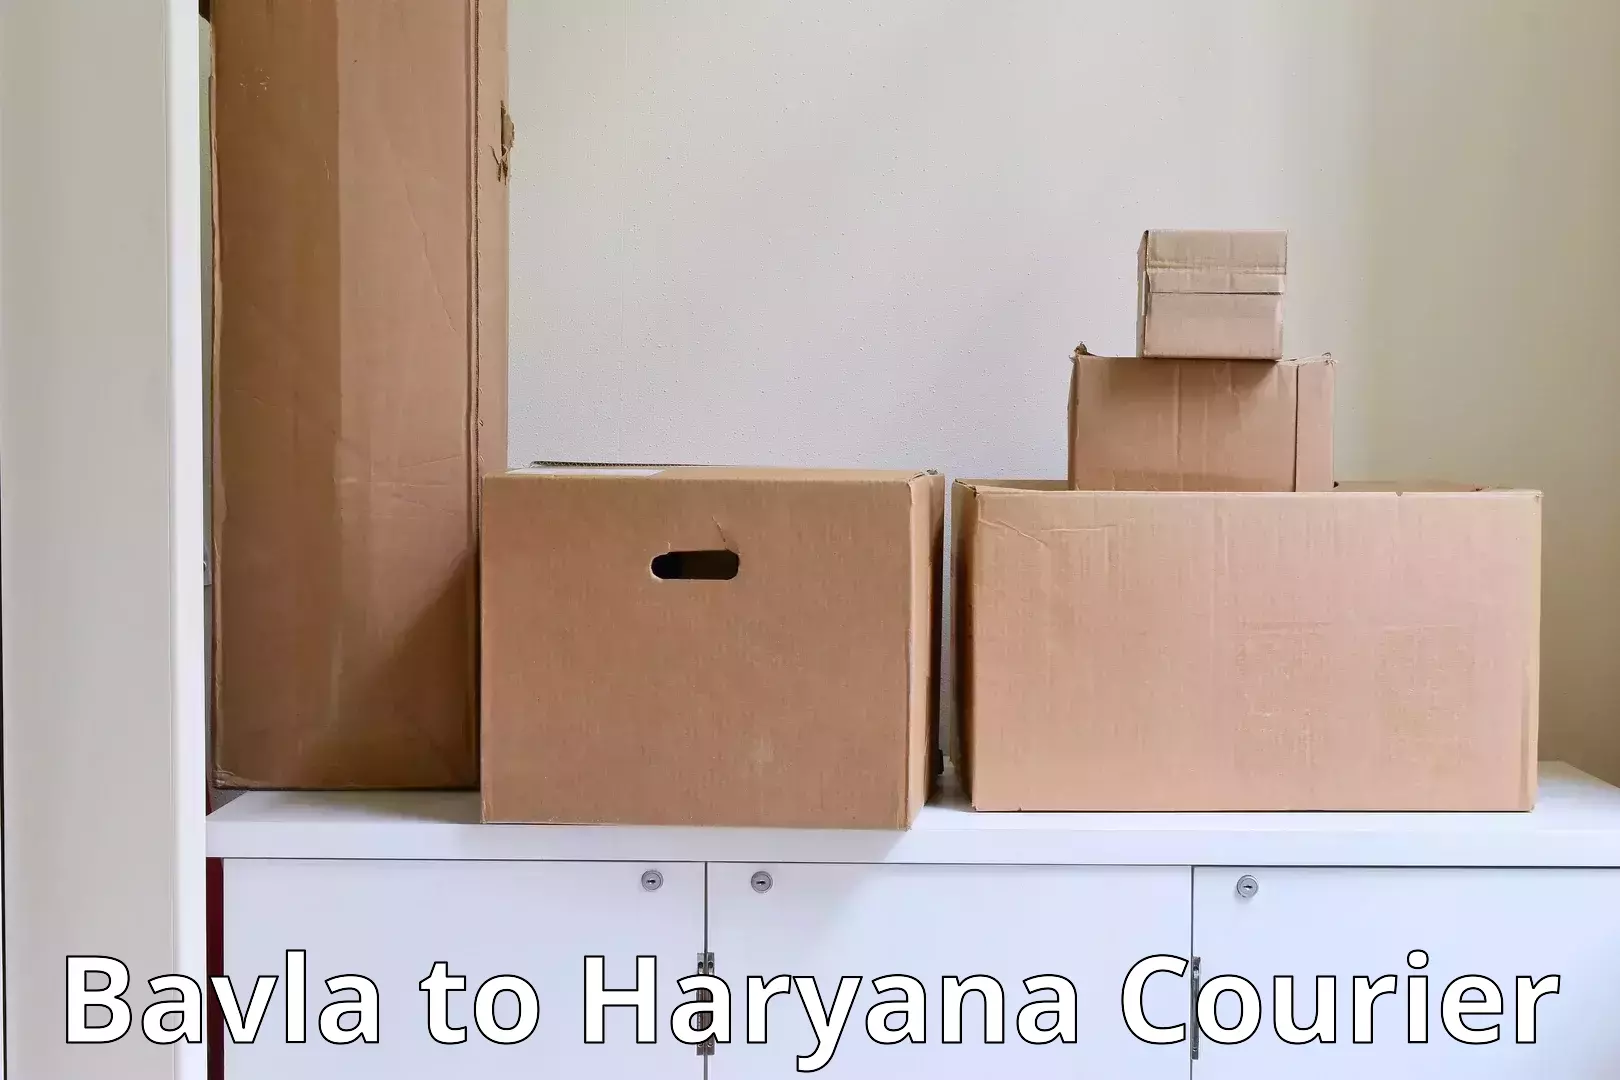 Household moving experts Bavla to Gurgaon